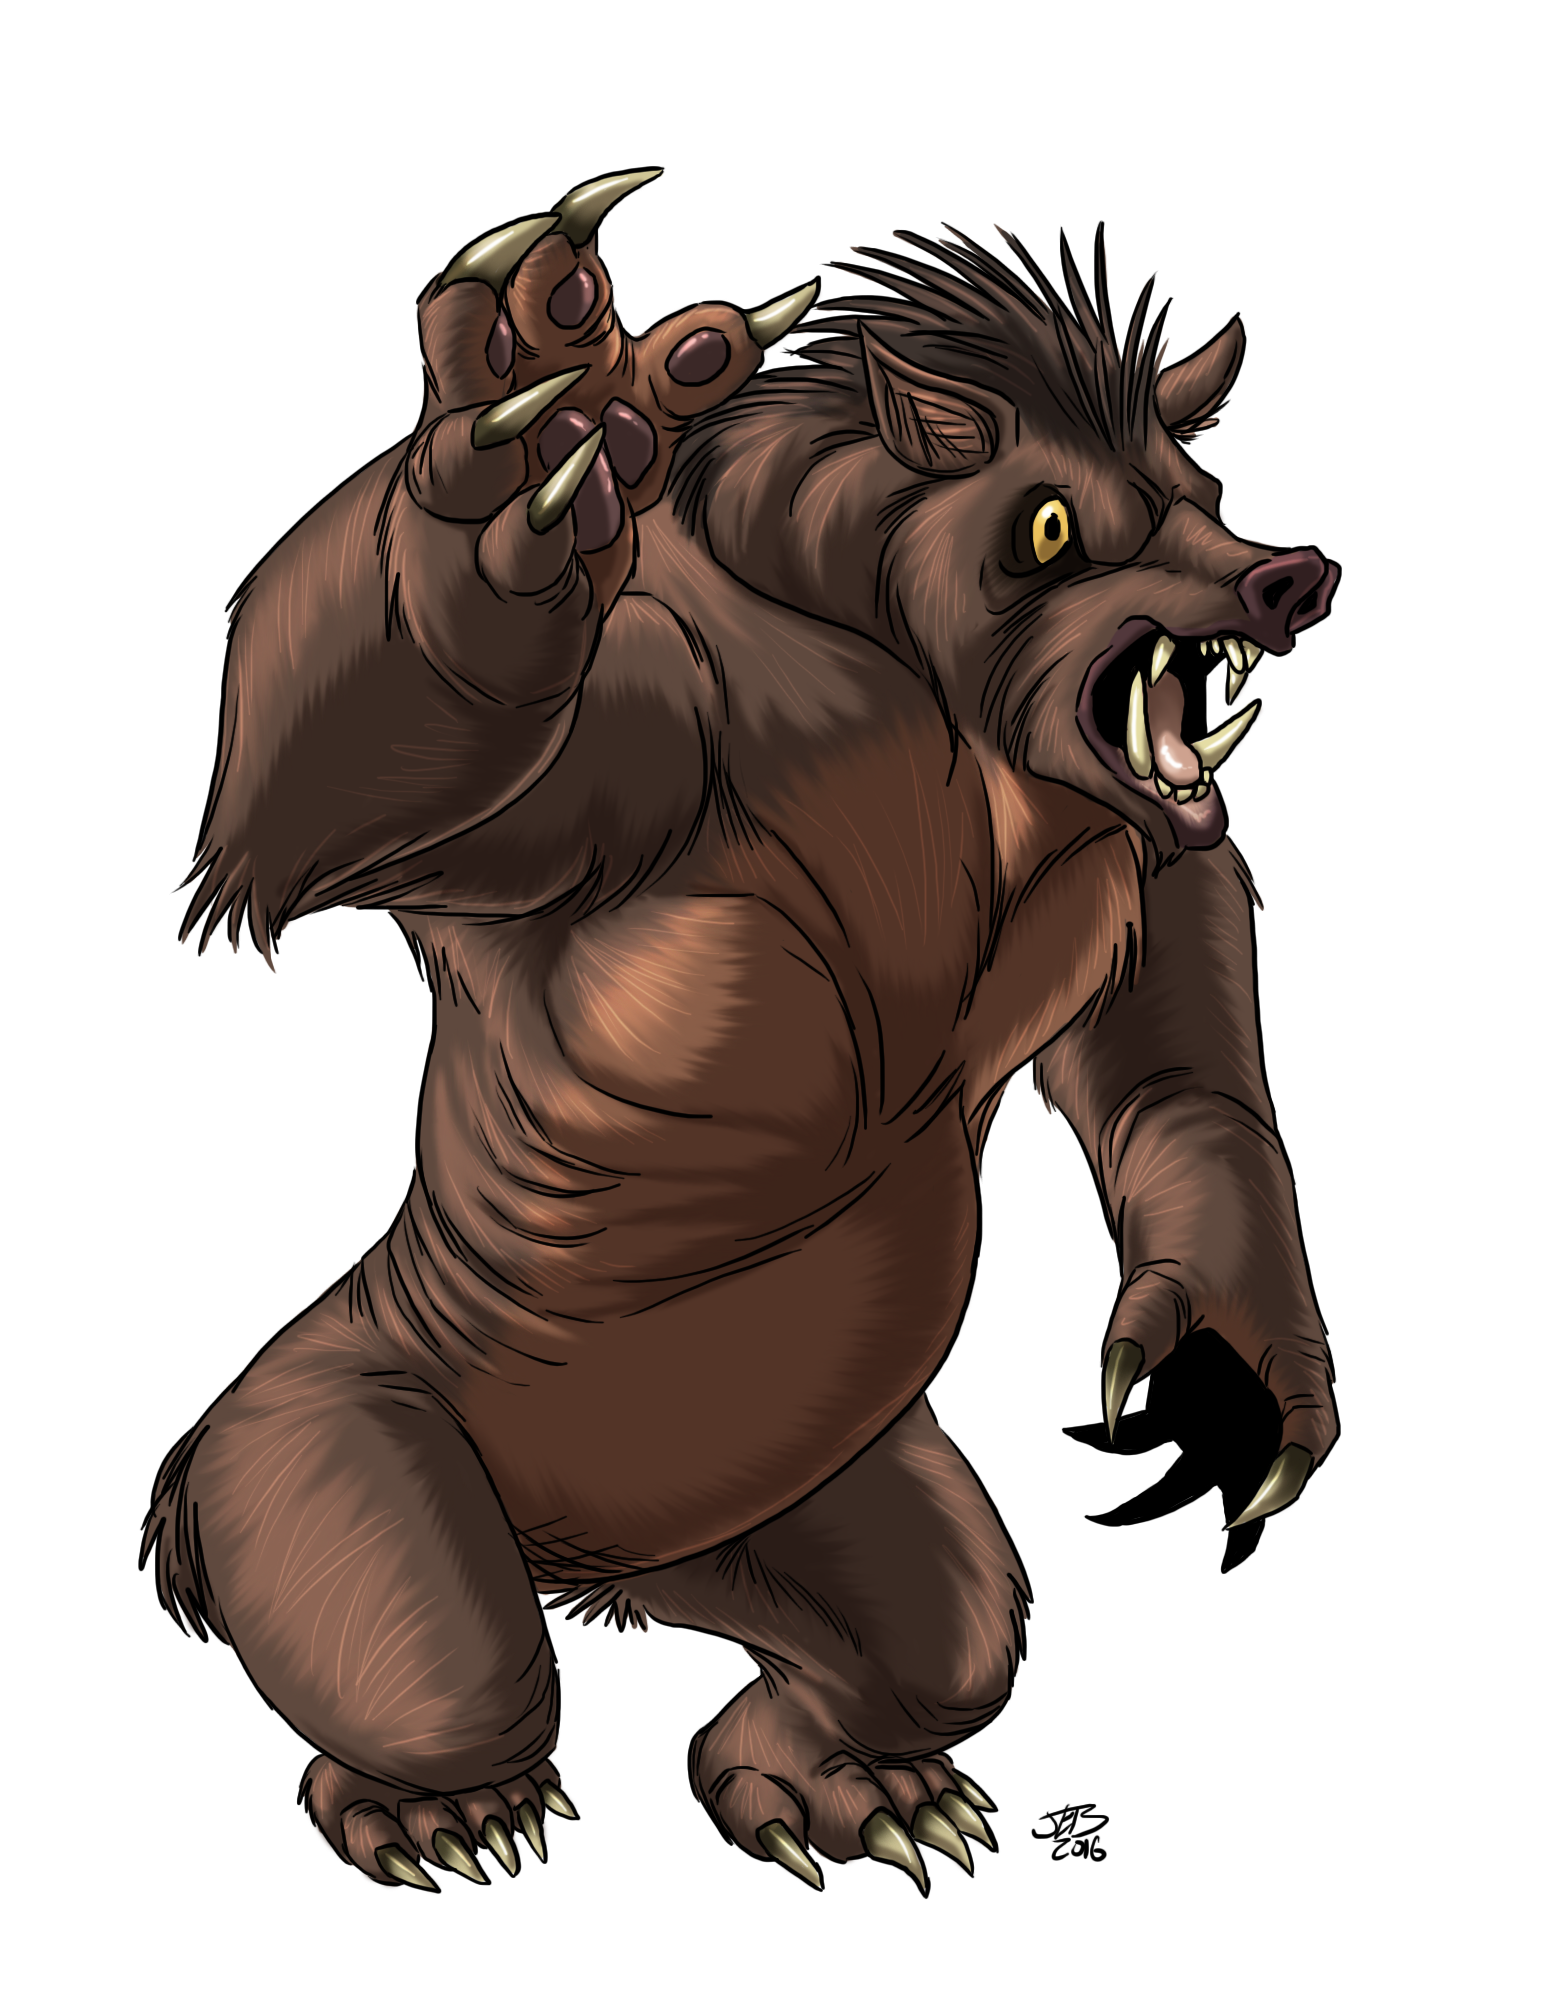 Elara : Boar Guardian by Sickbrush on DeviantArt